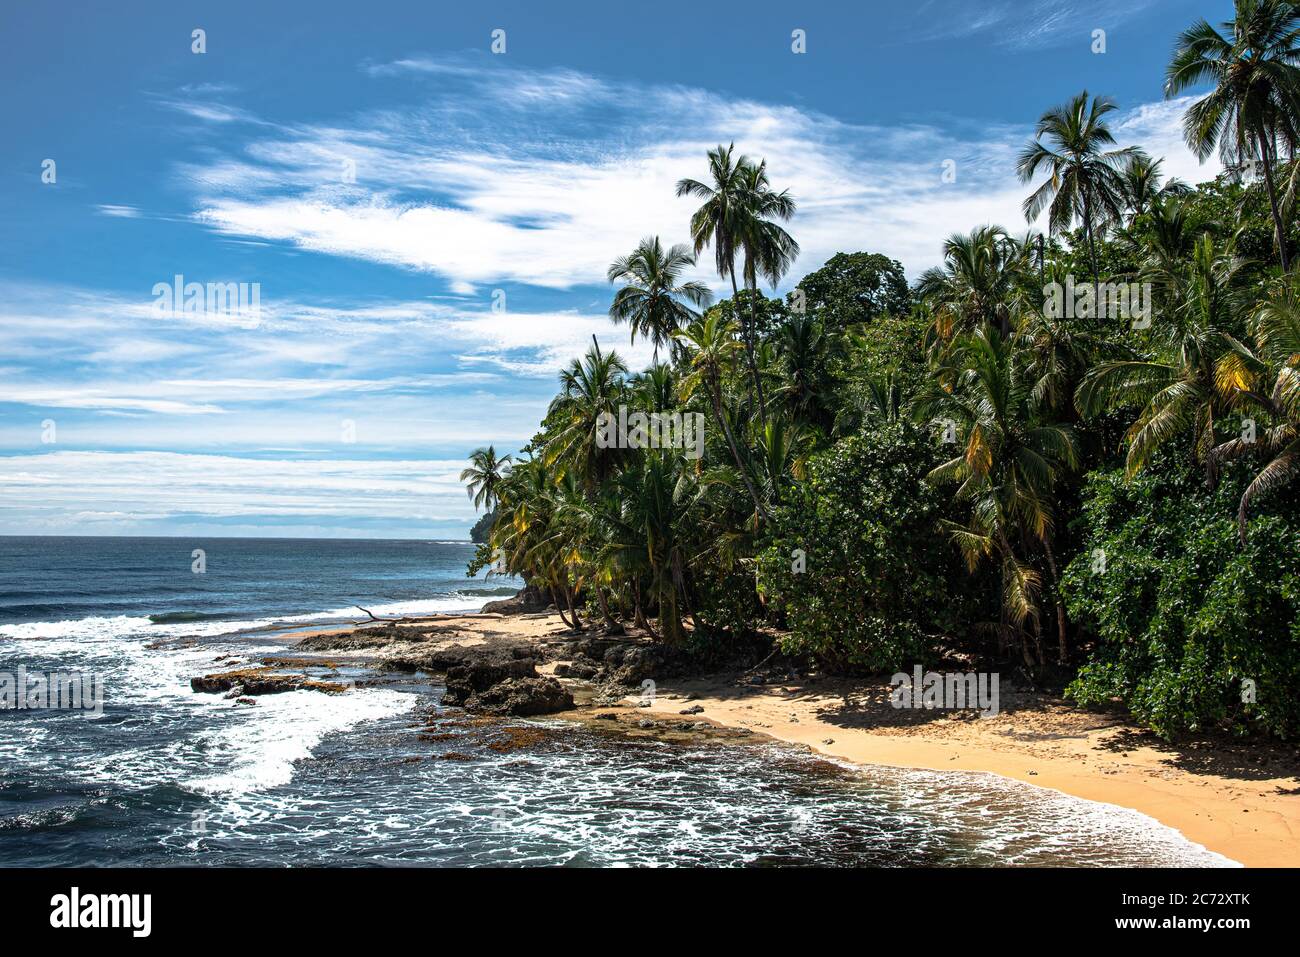 Playa salvaje del caribe, selva cruda Playa de selva tropical, Manzanillo Puerto Viejo Costa Rica, América Central azul cielo mar agua océano, puede ser que la falta de punto Foto de stock